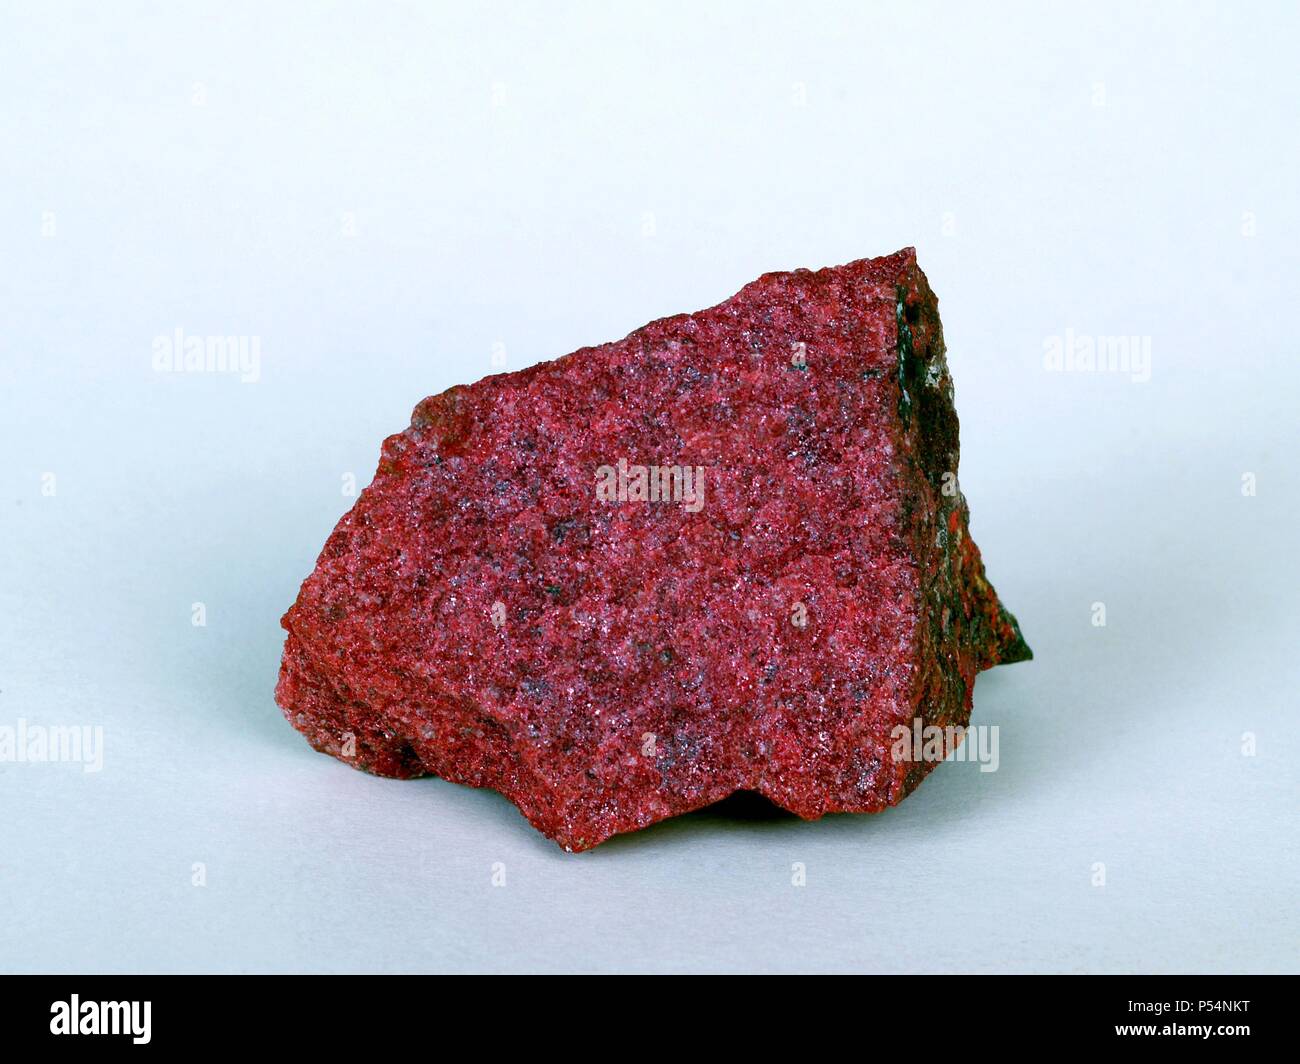 CINABRIO. Sulfuro de mercurio de color rojo bermellón, cristalizado en el sistema trigonal. Se halla pocas veces en cristales y habitualmente en masas granulares. Es el mineral más importante de mercurio. Instituto Geológico Minero. Madrid. España. Stock Photo